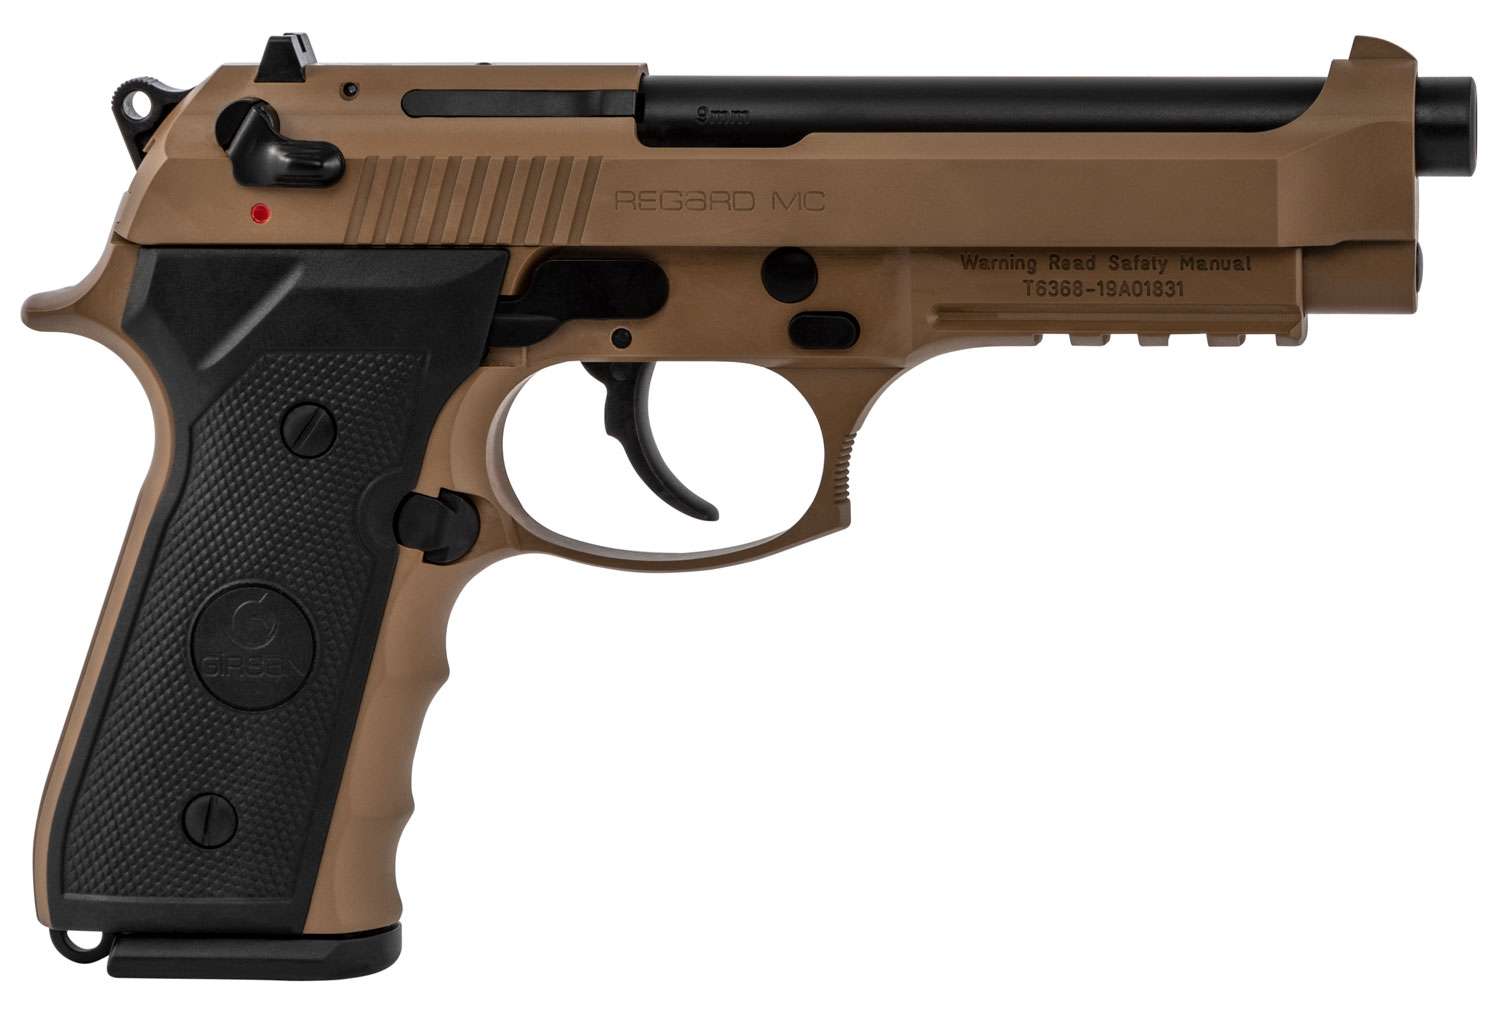 EAA 390084 Girsan Regard MC 9mm Luger 4.90